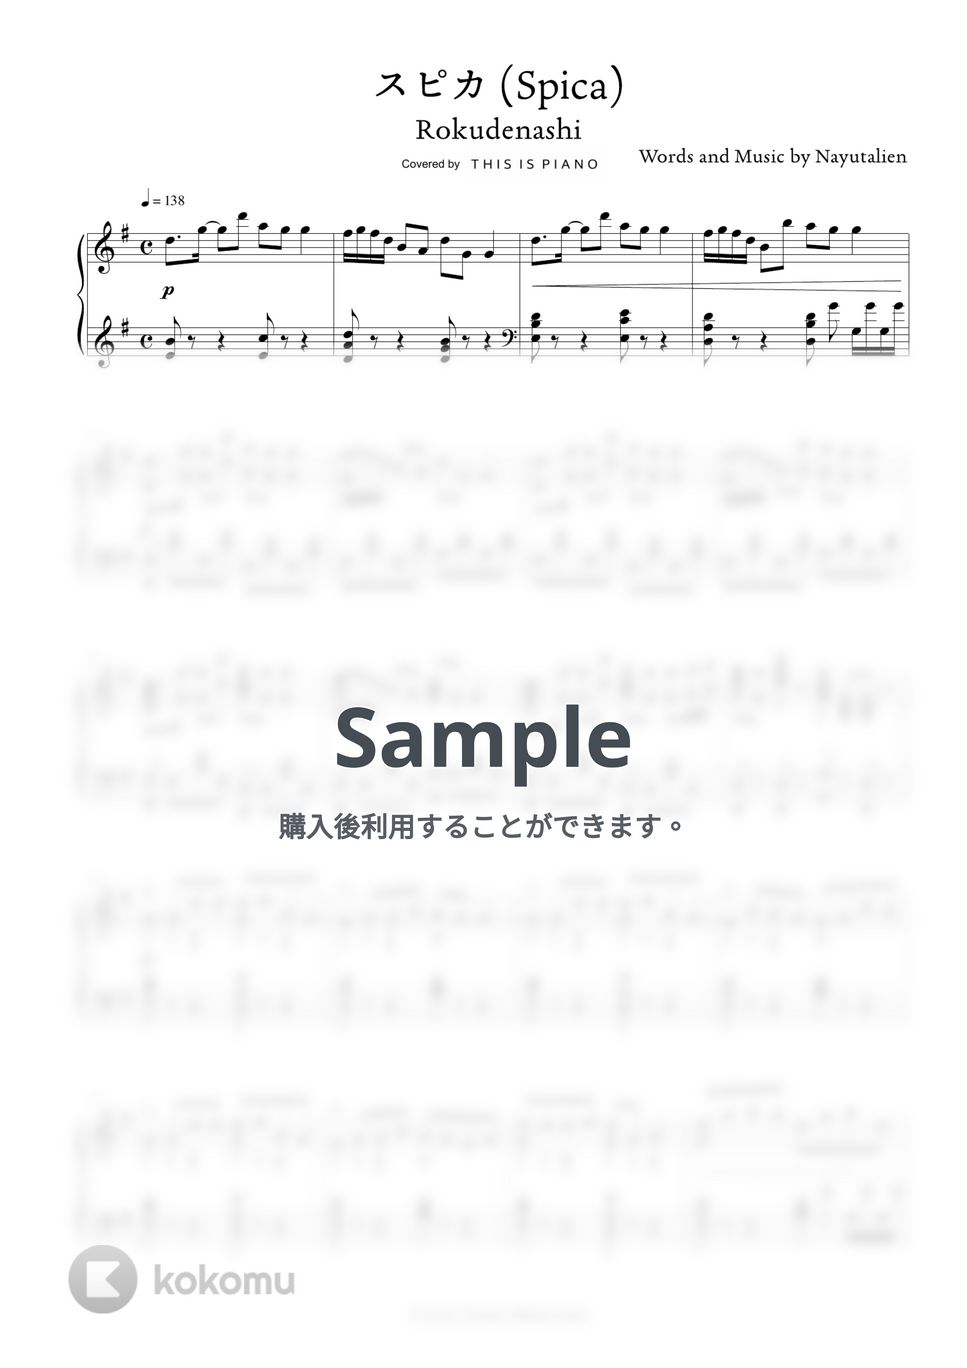 ロクデナシ - スピカ by THIS IS PIANO